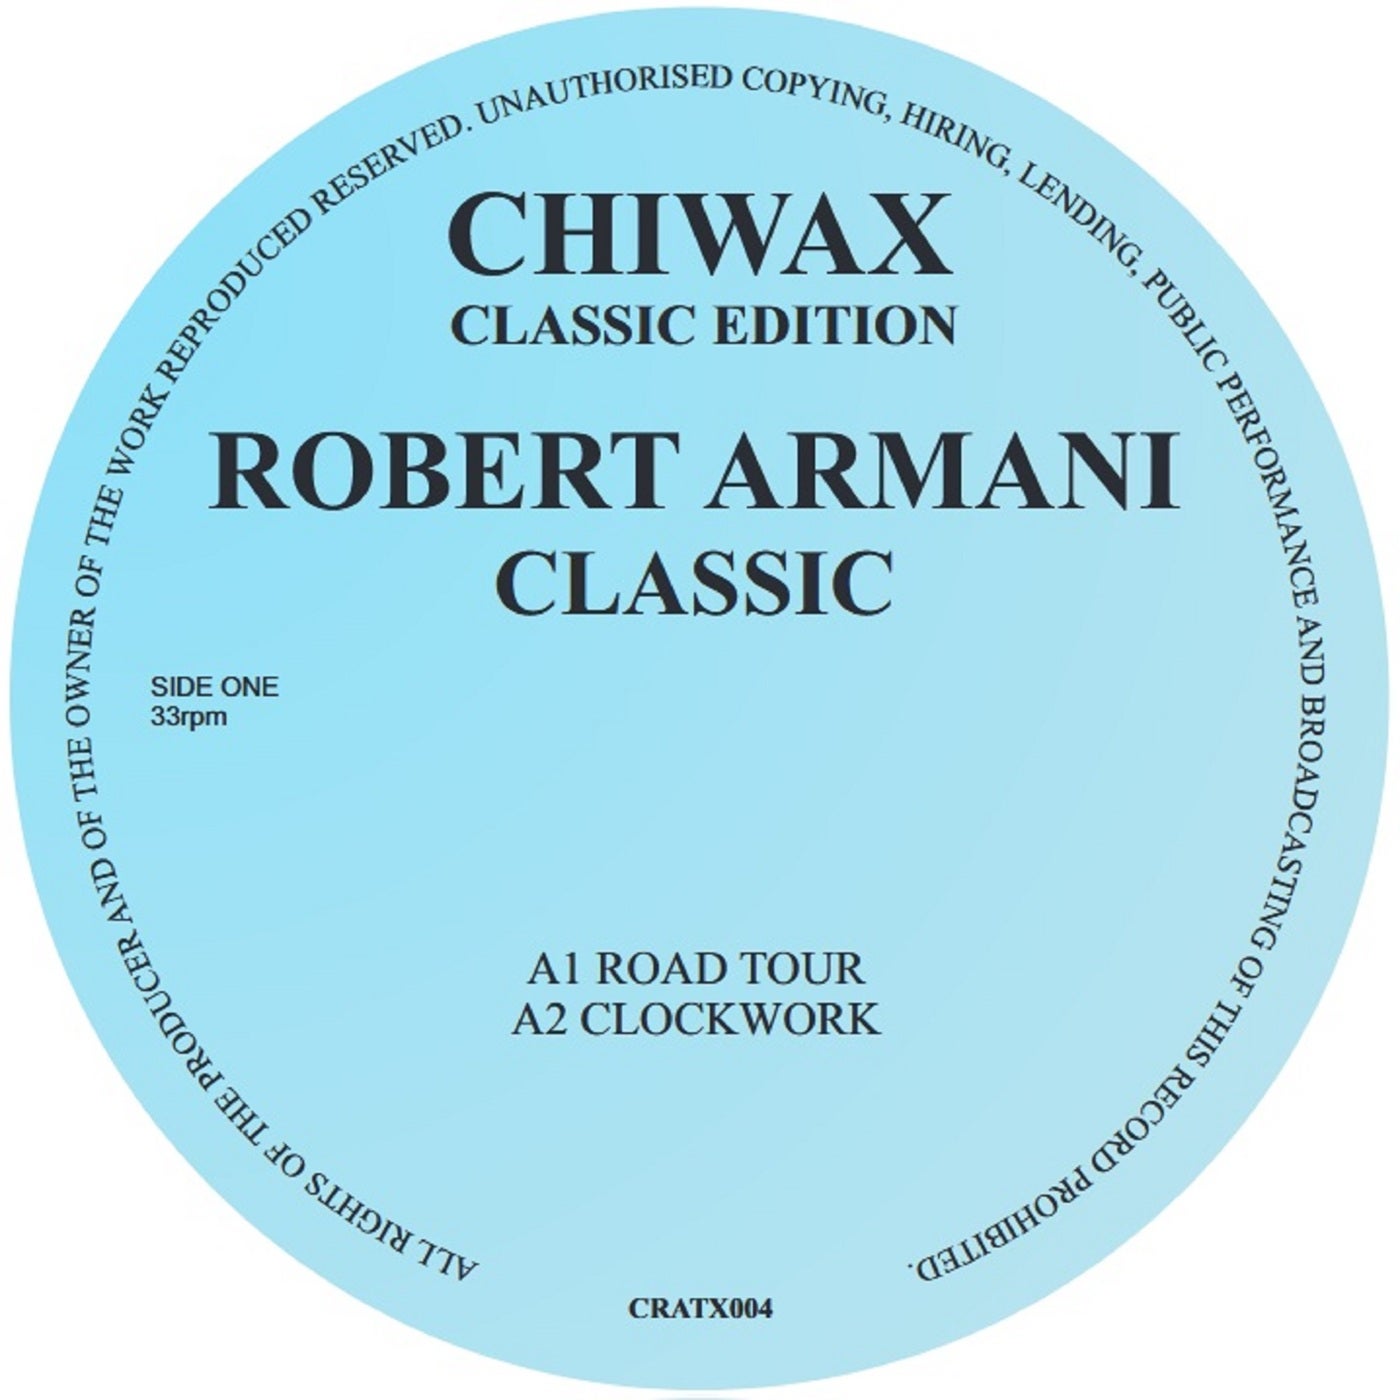 Robert Armani music download - Beatport